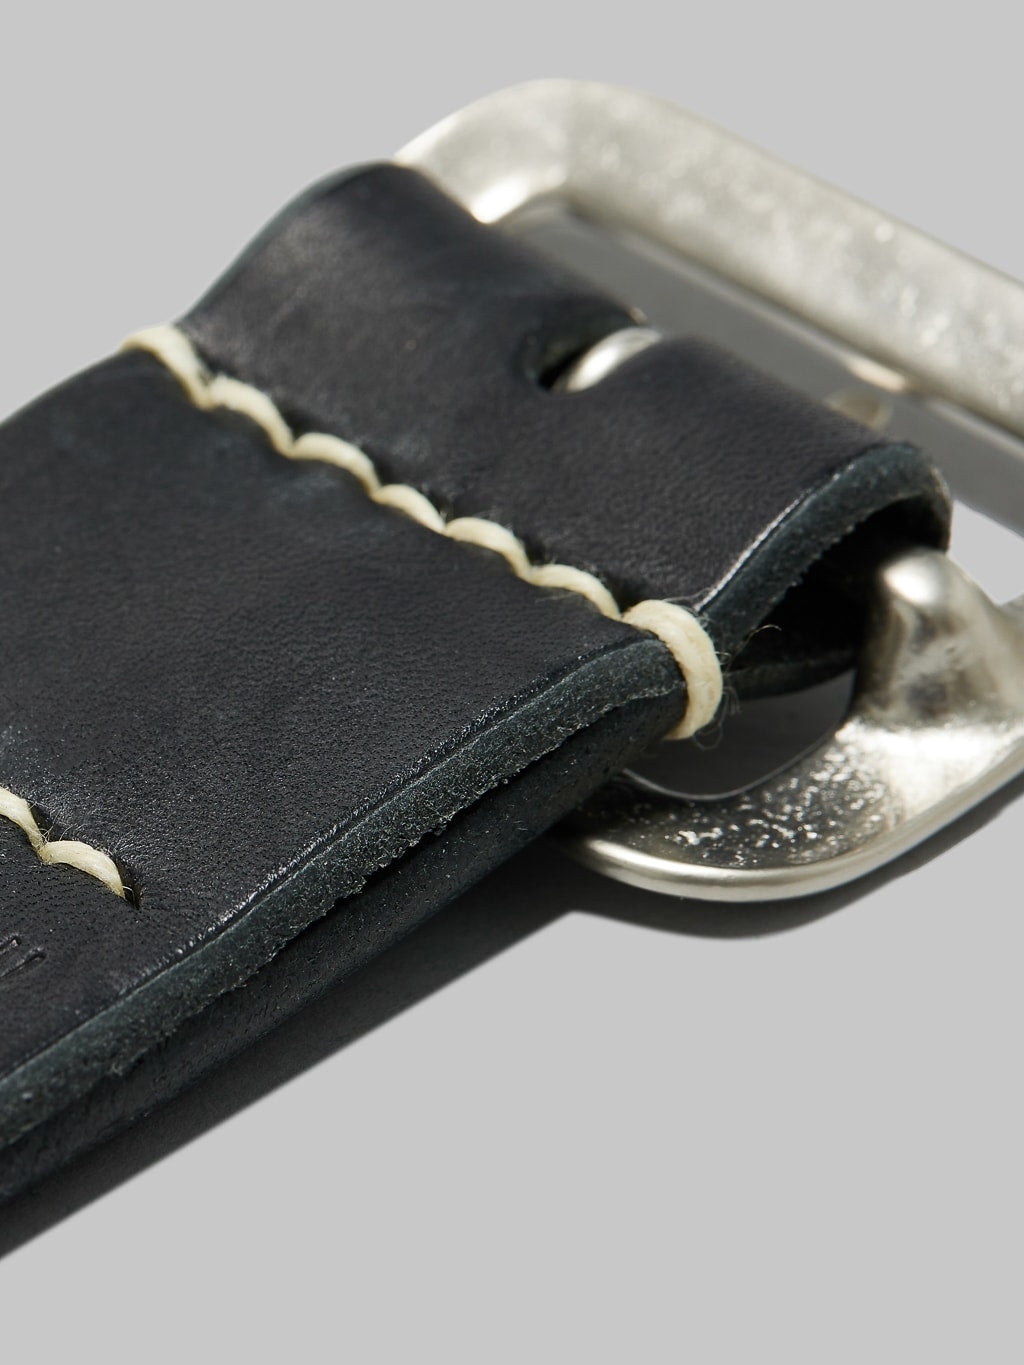 Sugar Cane leather garrison belt black white thread stitching